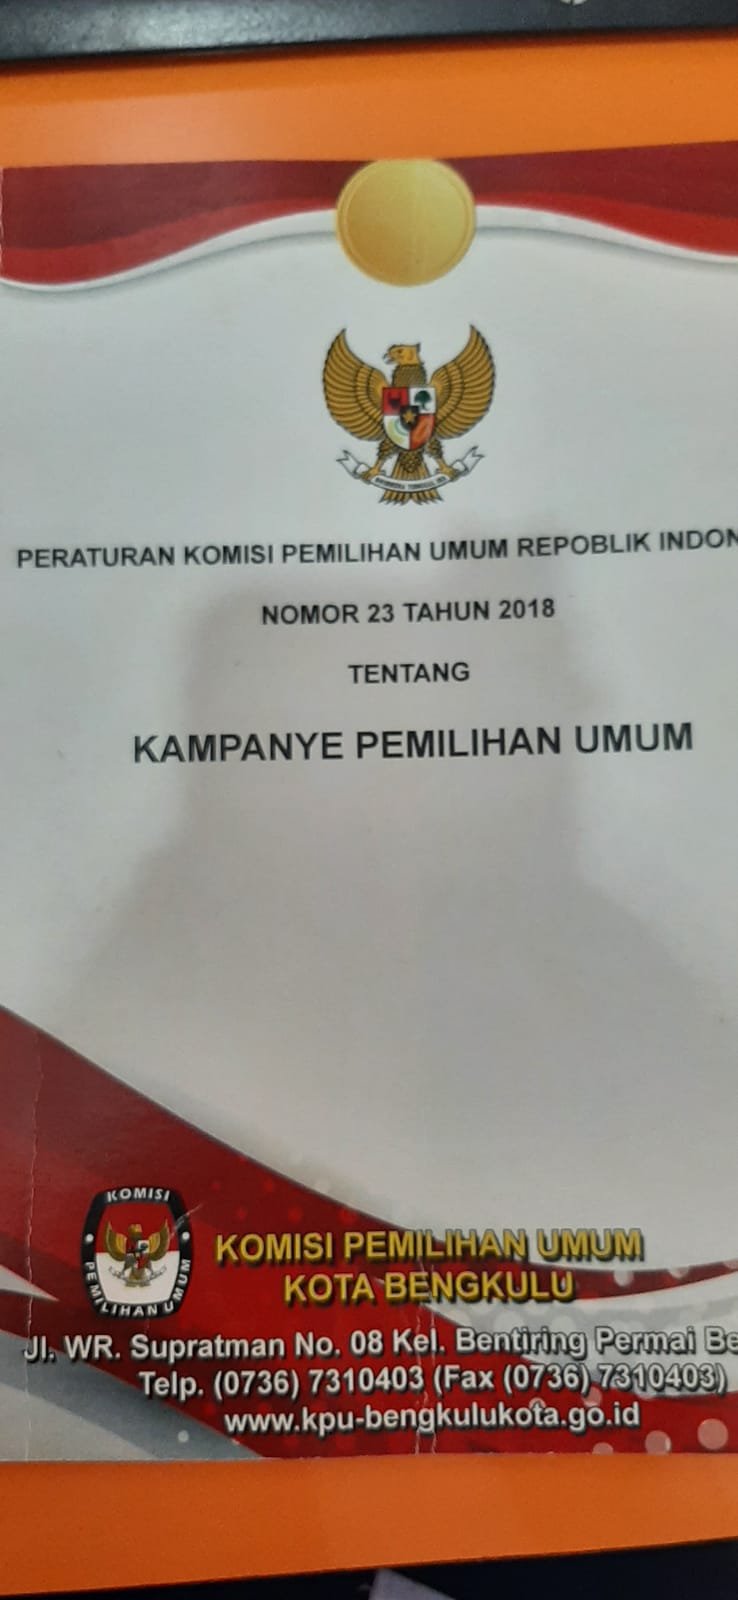 PERATURAN KOMISI PEMILIHAN UMUM REPUBLIK INDONESIA NOMOR 23 TAHUN 2018